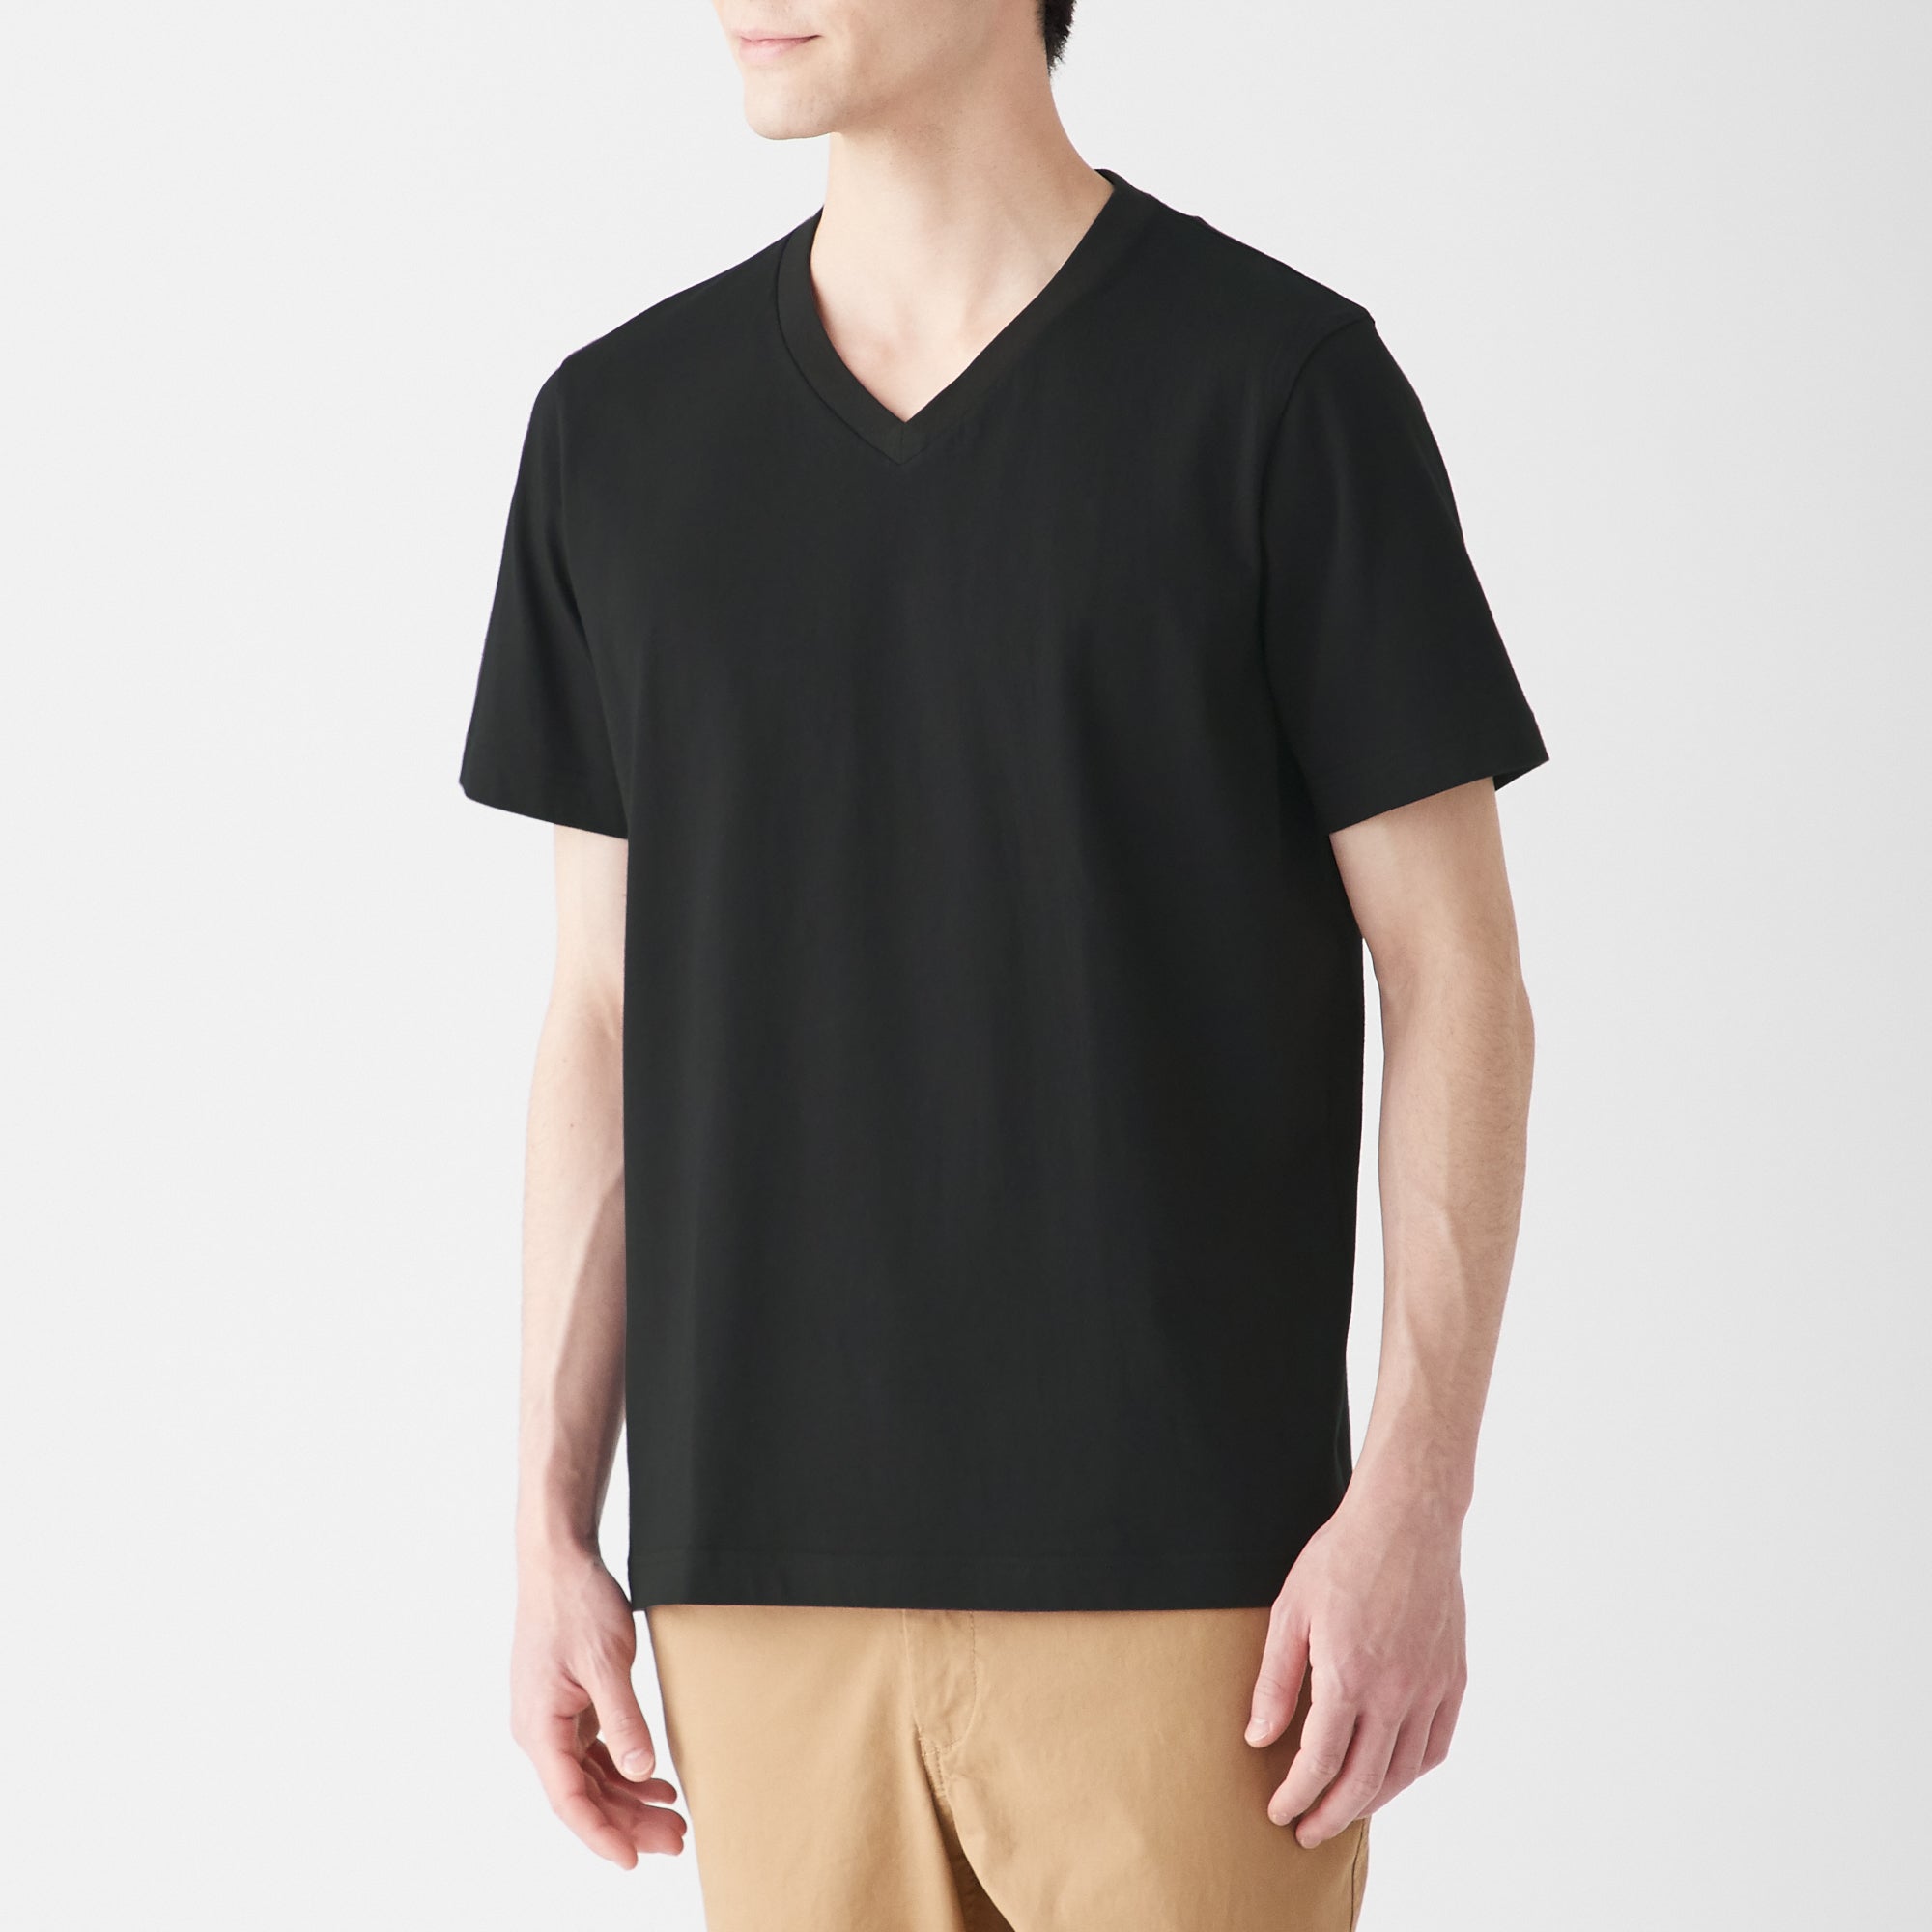 Men's V-Neck Short Sleeve T-Shirt